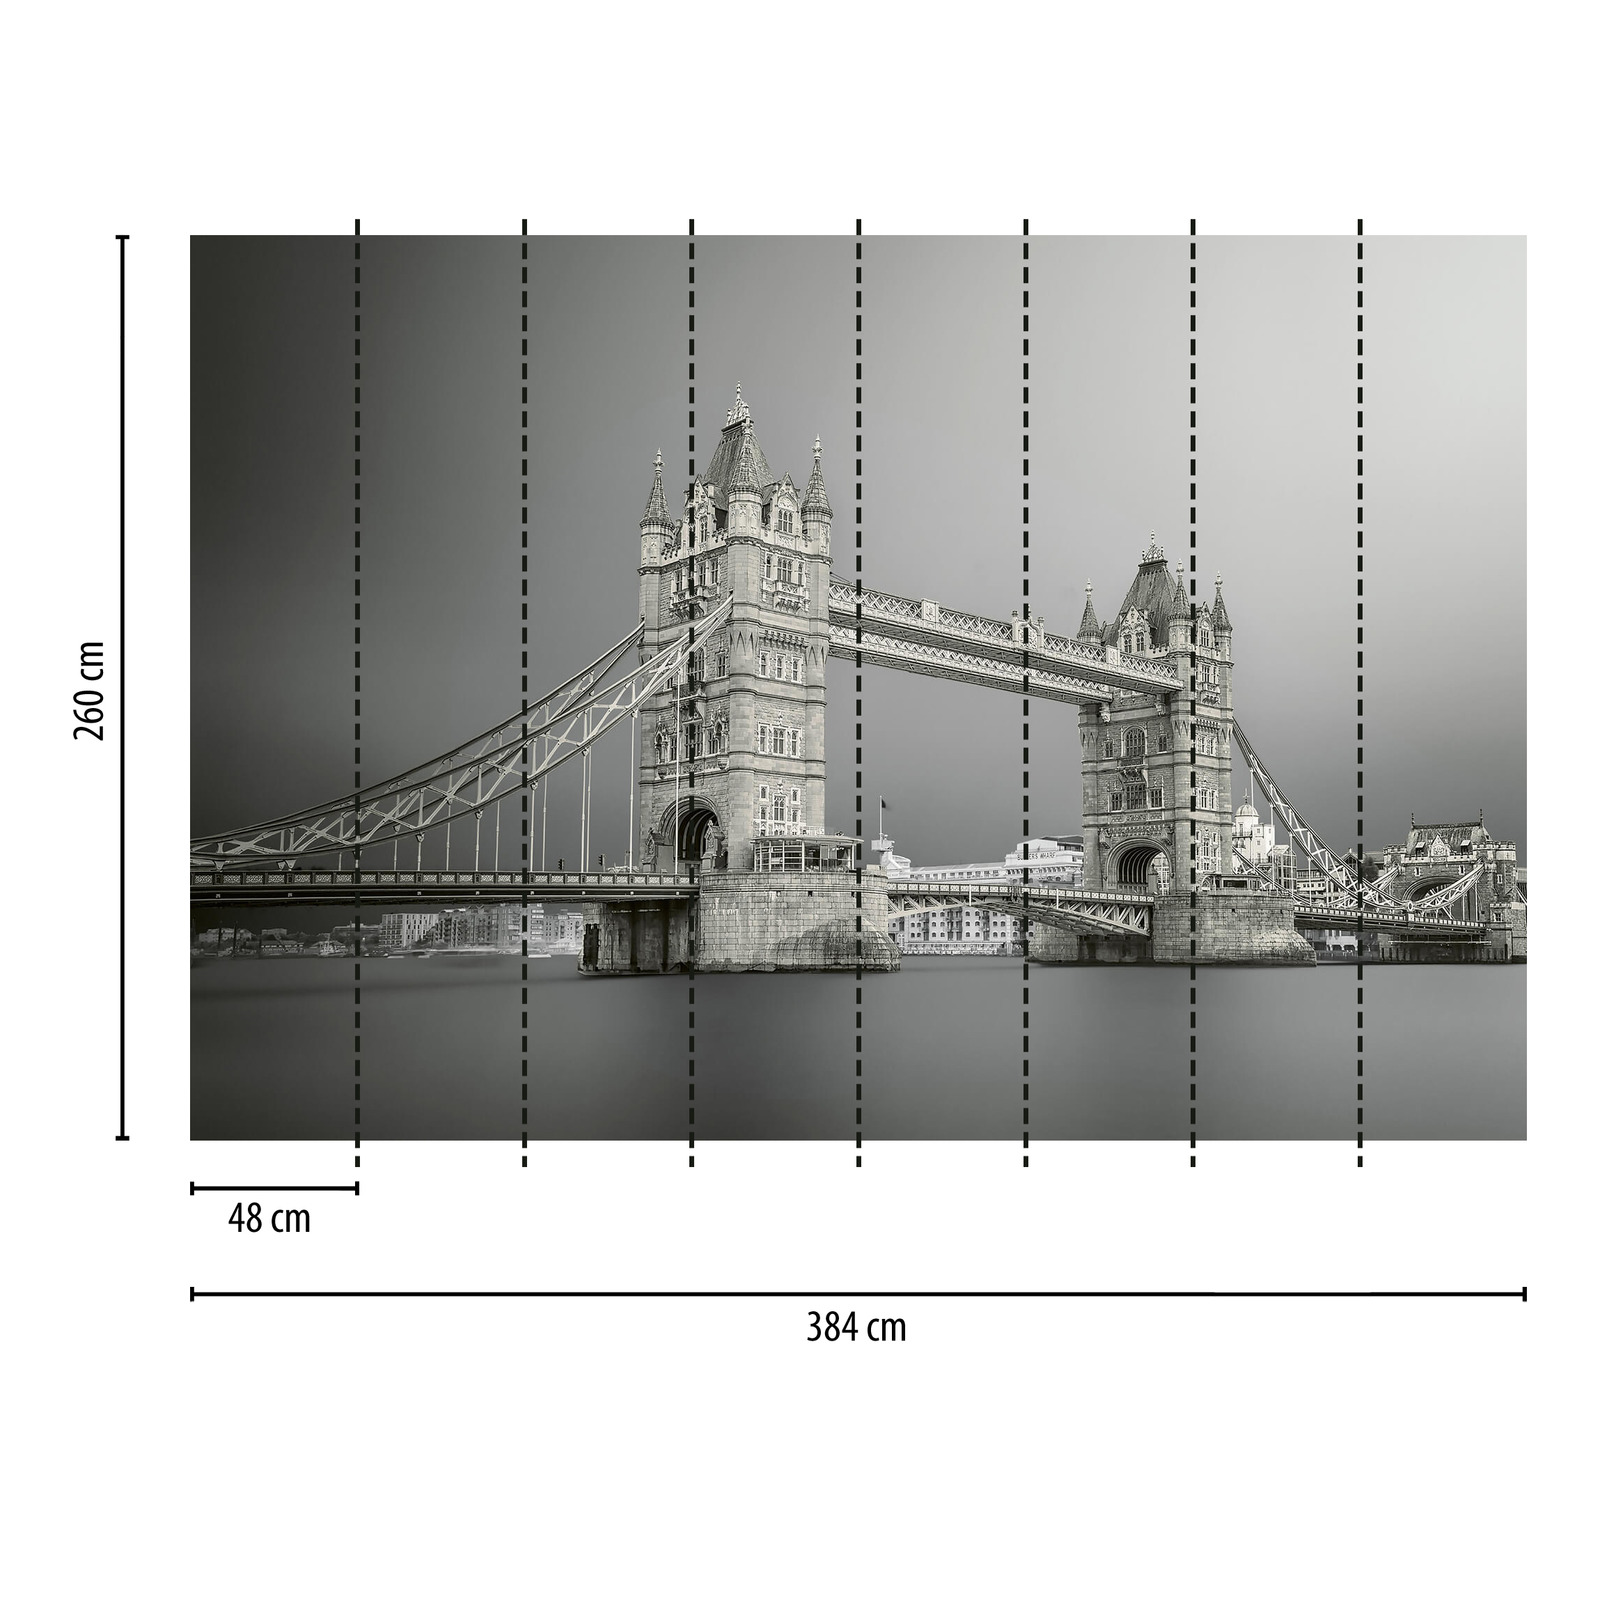             Photo wallpaper Tower Bridge London - grey, white, black
        